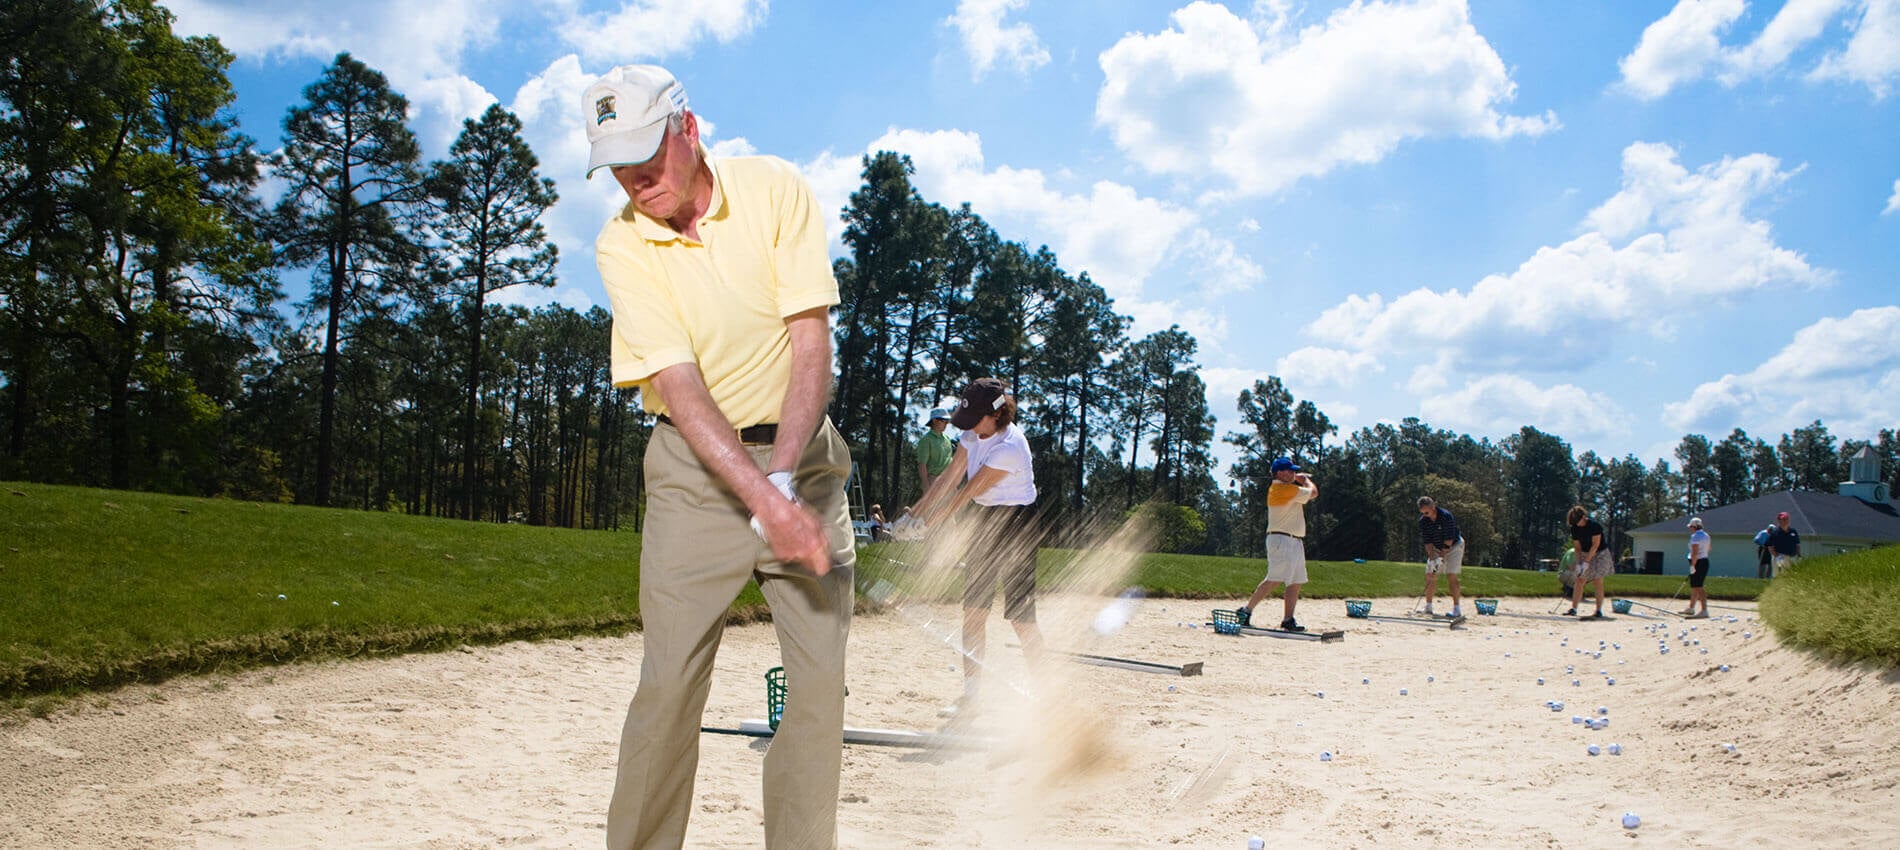 Golf Academy bunker practice Pinehurst Resort